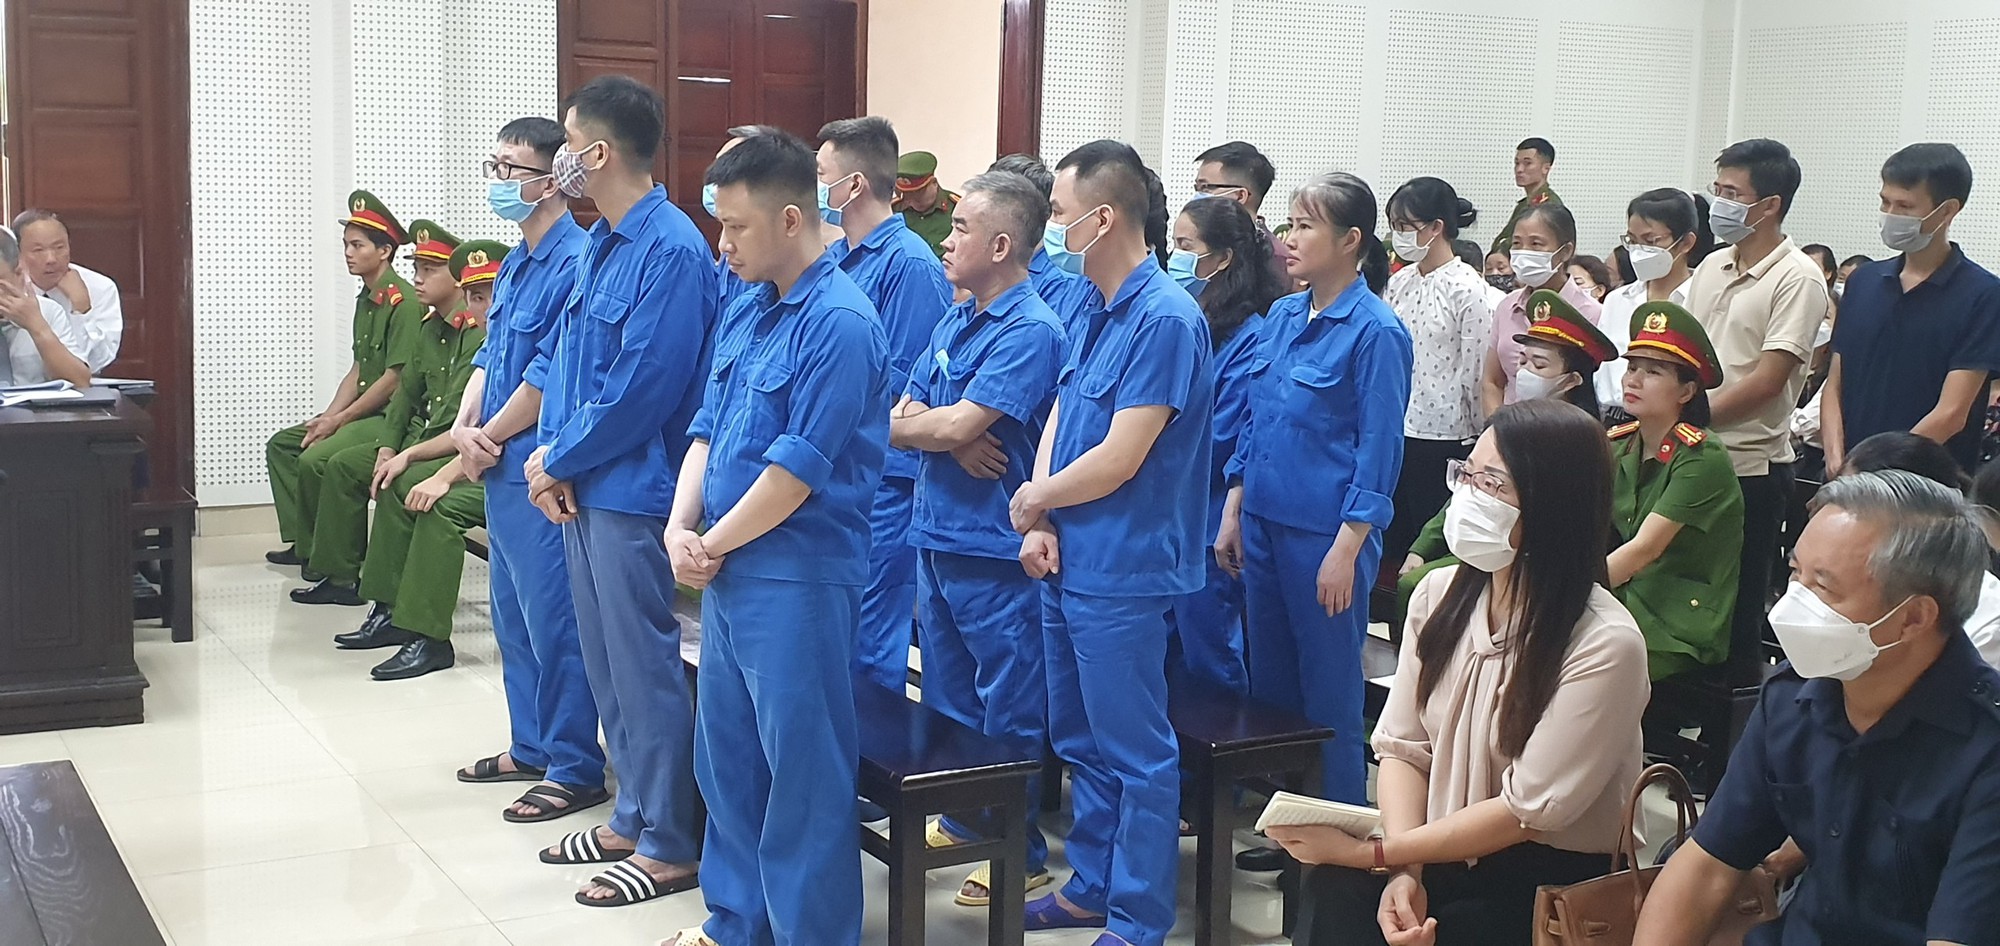 Giám đốc Sở GDĐT Quảng Ninh Vũ Liên Oanh bị đề nghị mức án 15-17 năm tù - Ảnh 2.